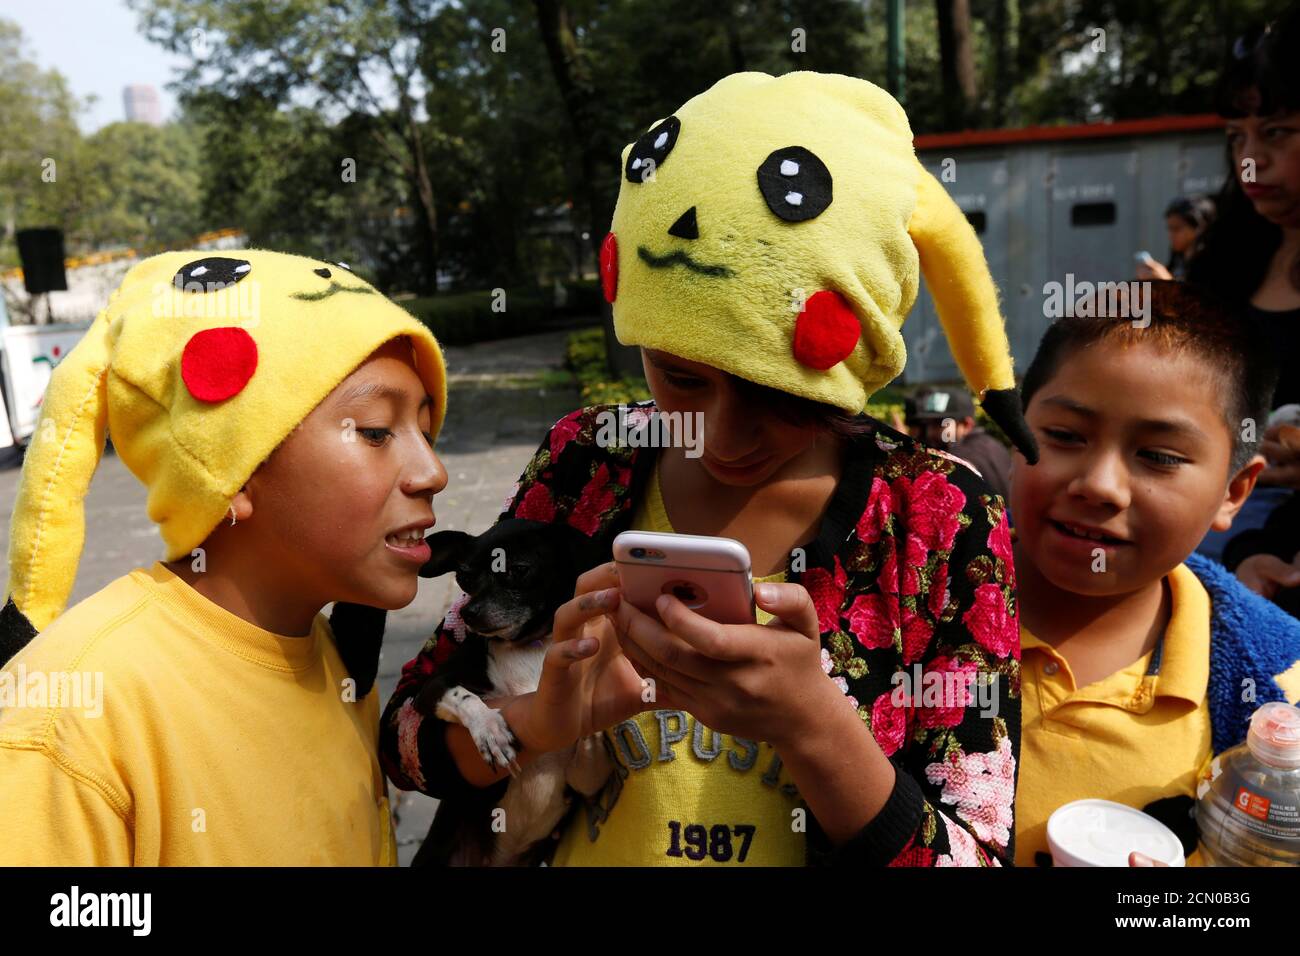 Admitir Ofensa Sicilia Los niños que llevan sombreros de un personaje de Pokemon, Pikachu, juegan  a Pokemon Go durante una reunión para celebrar el "día de Pokemon" en la  Ciudad de México, México 21 de